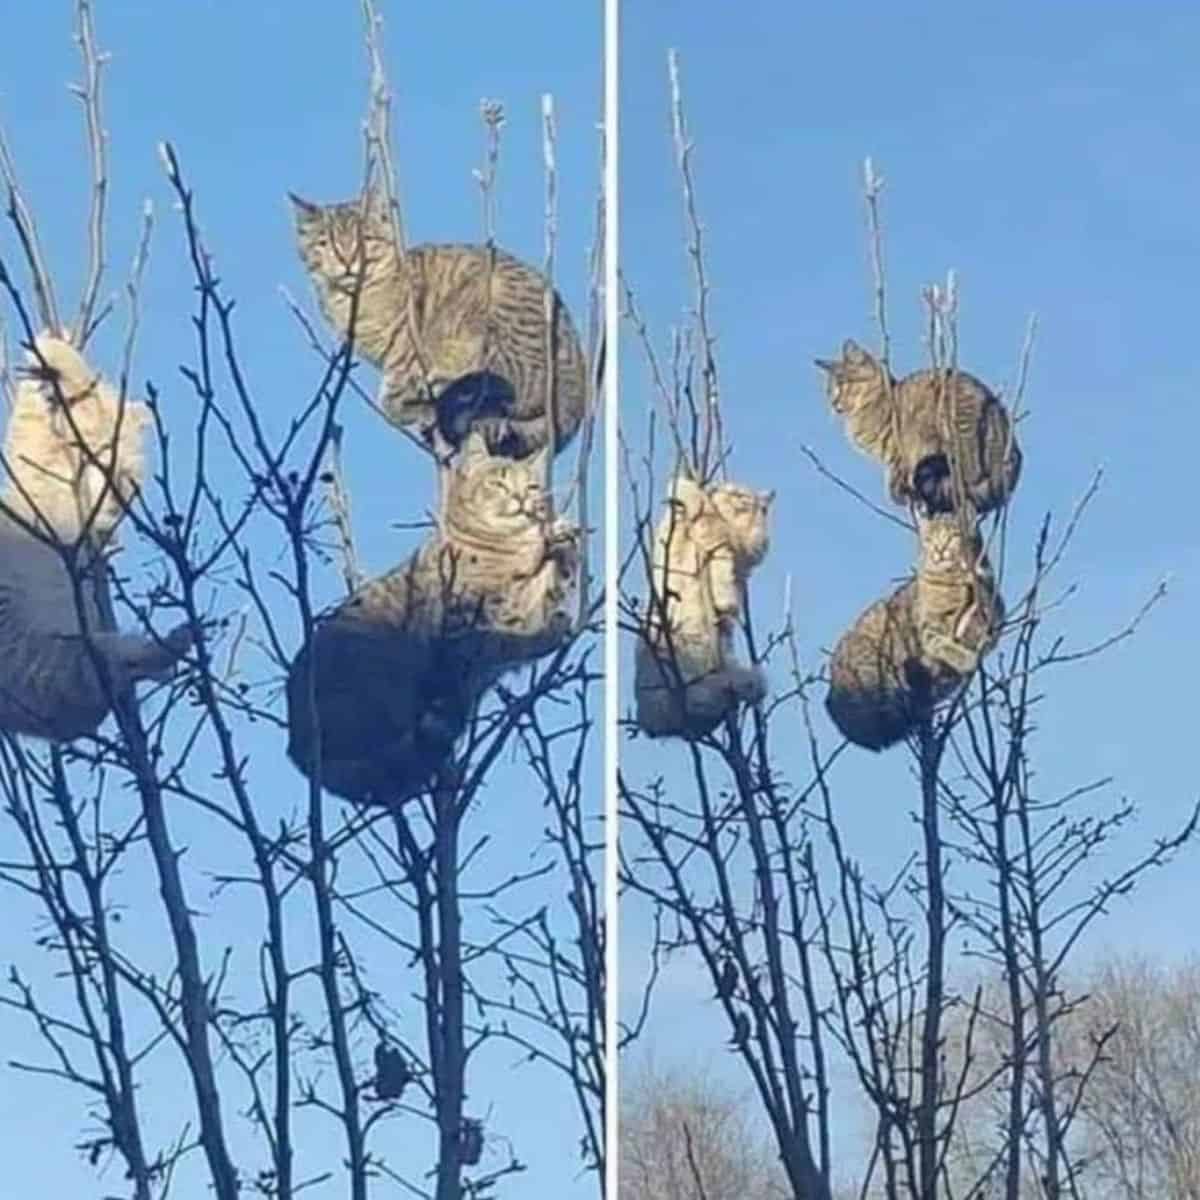 cats on the thin tree